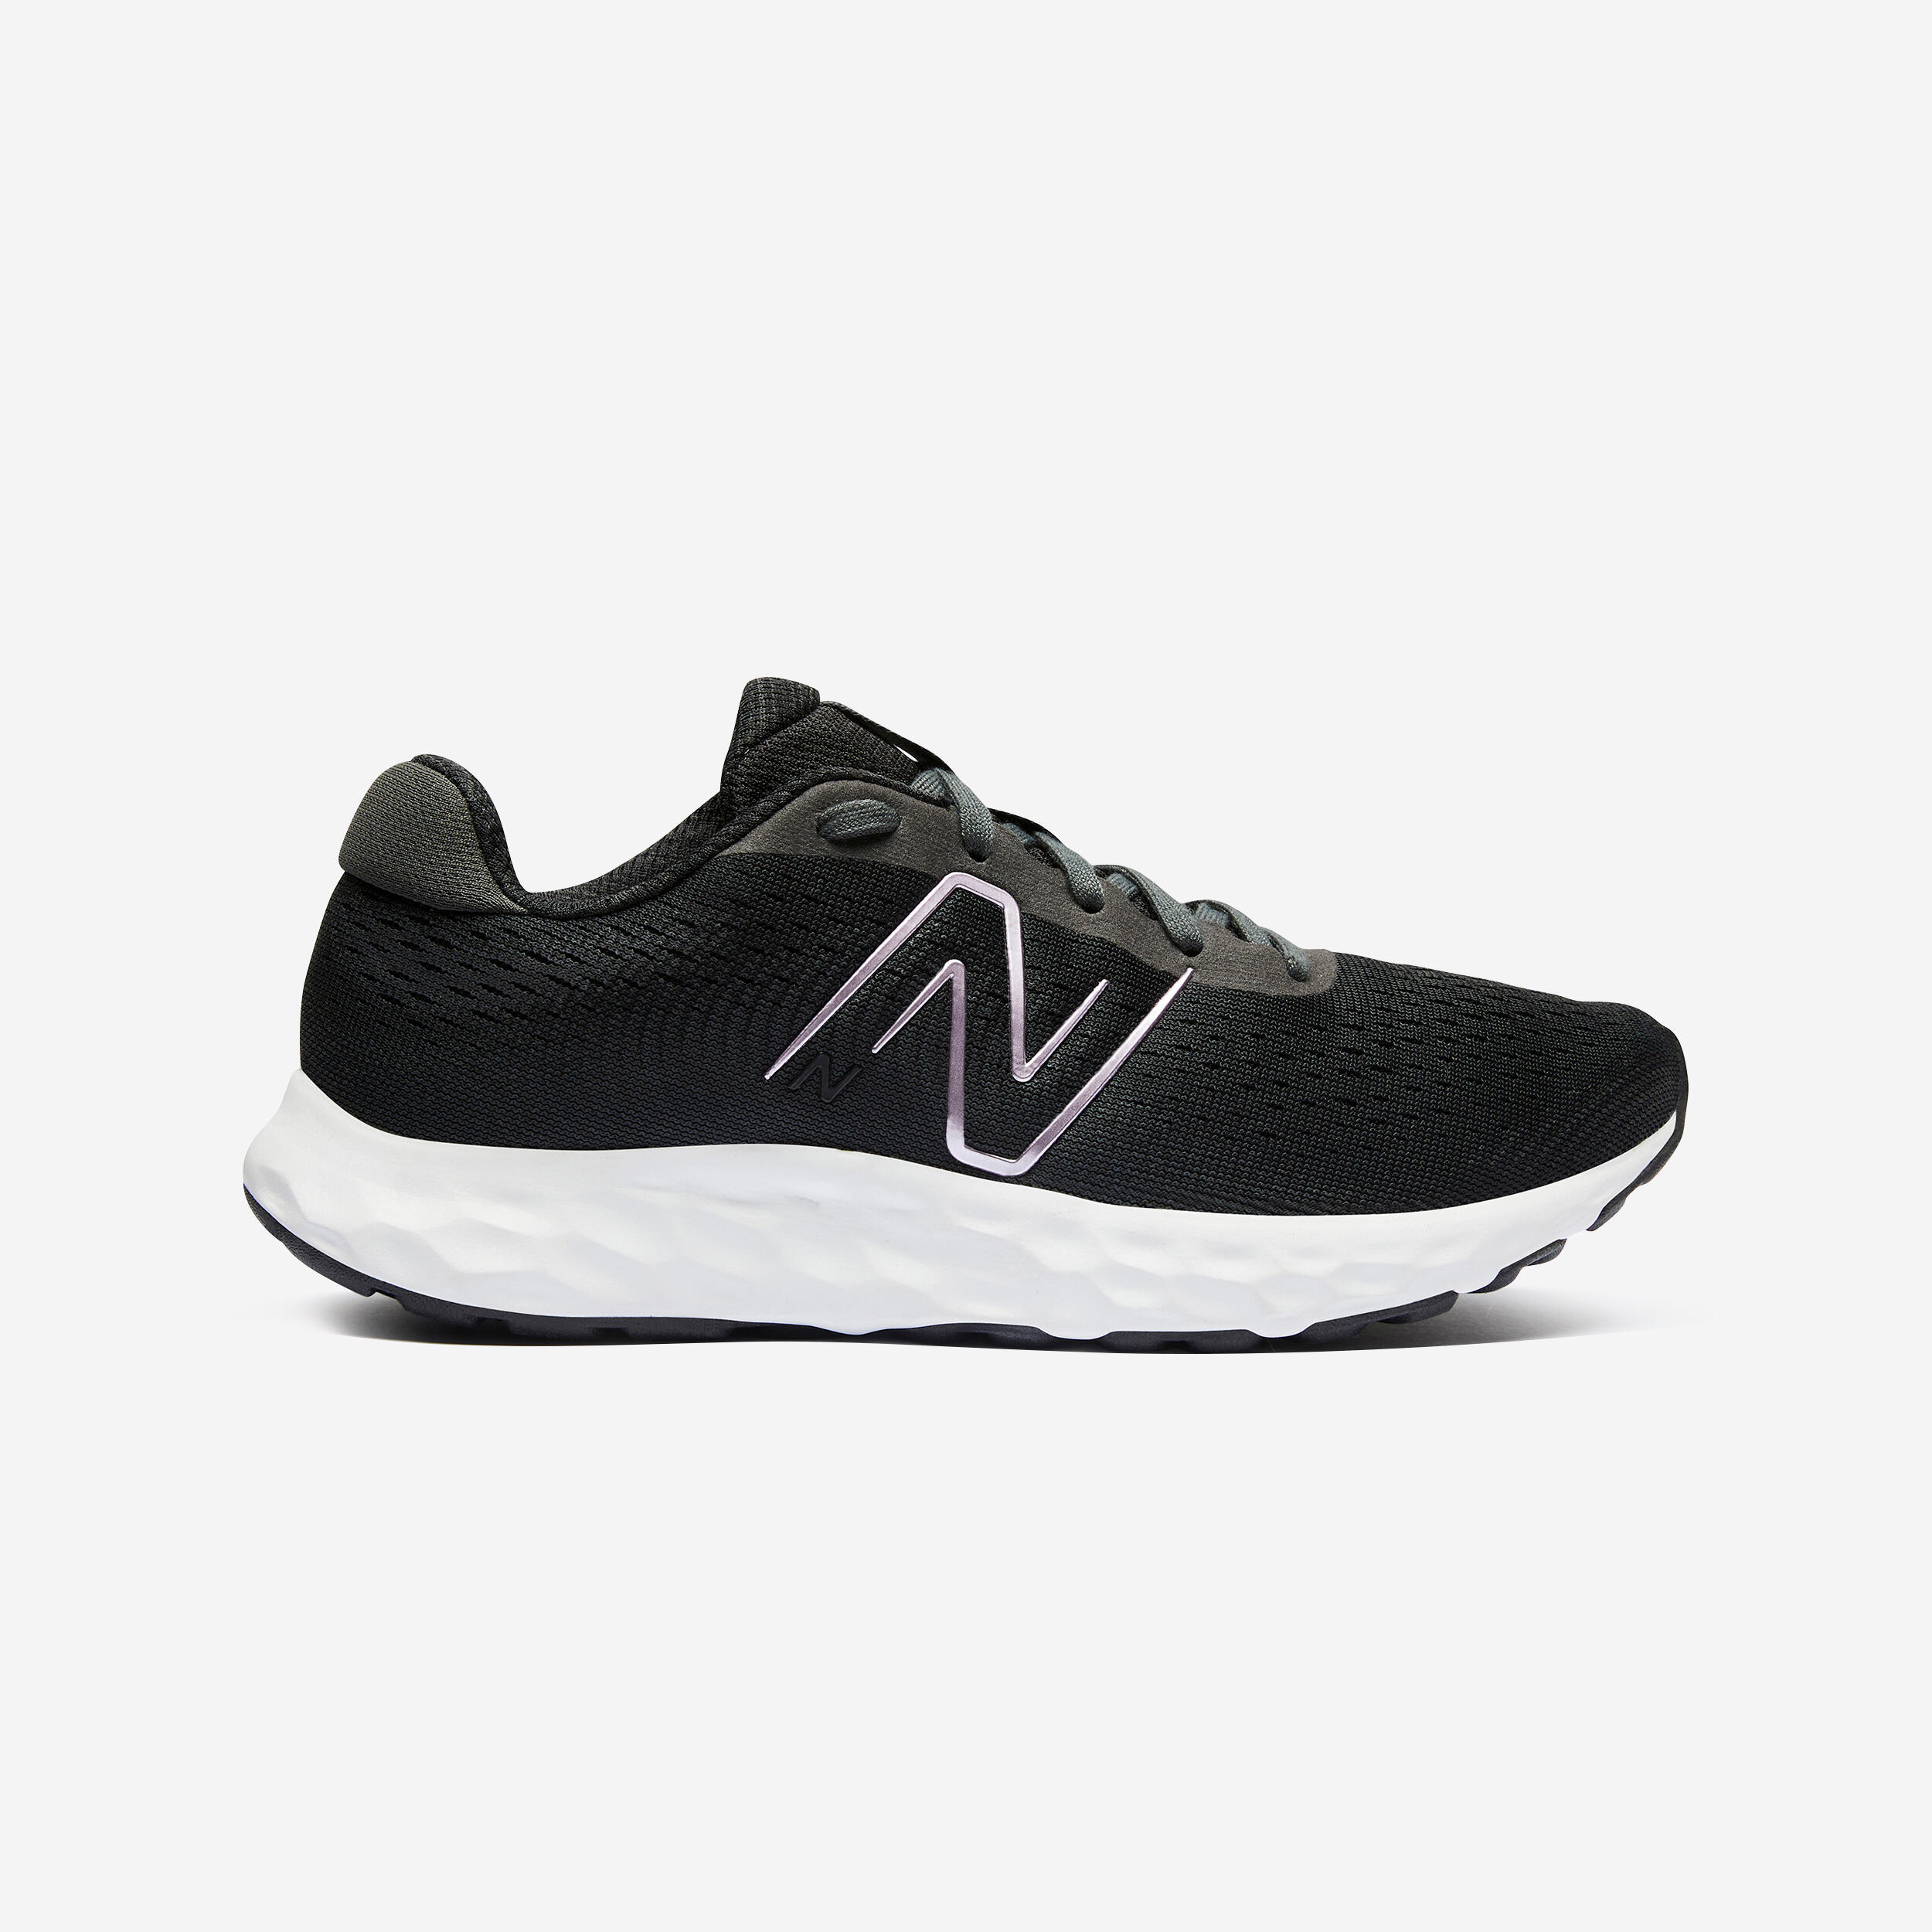 NB W520 v8 BLACK women's running shoes 6/8